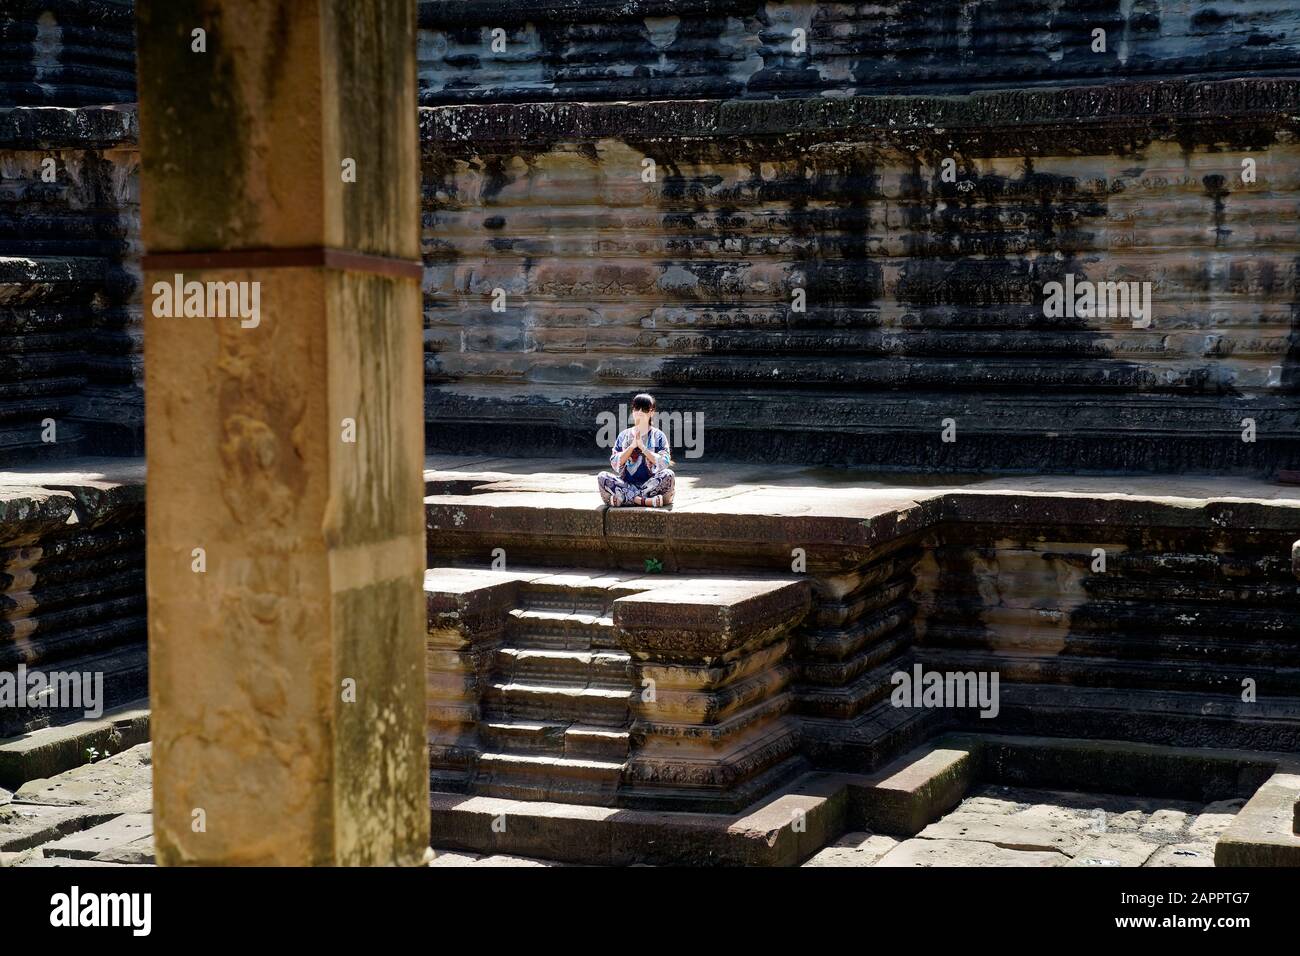 Kambodscha, Angkor Wat, Provinz Siem Reap. Der prächtige Khmer-Tempel von Angkor Wat badete bei Sonnenschein am Nachmittag. Stockfoto